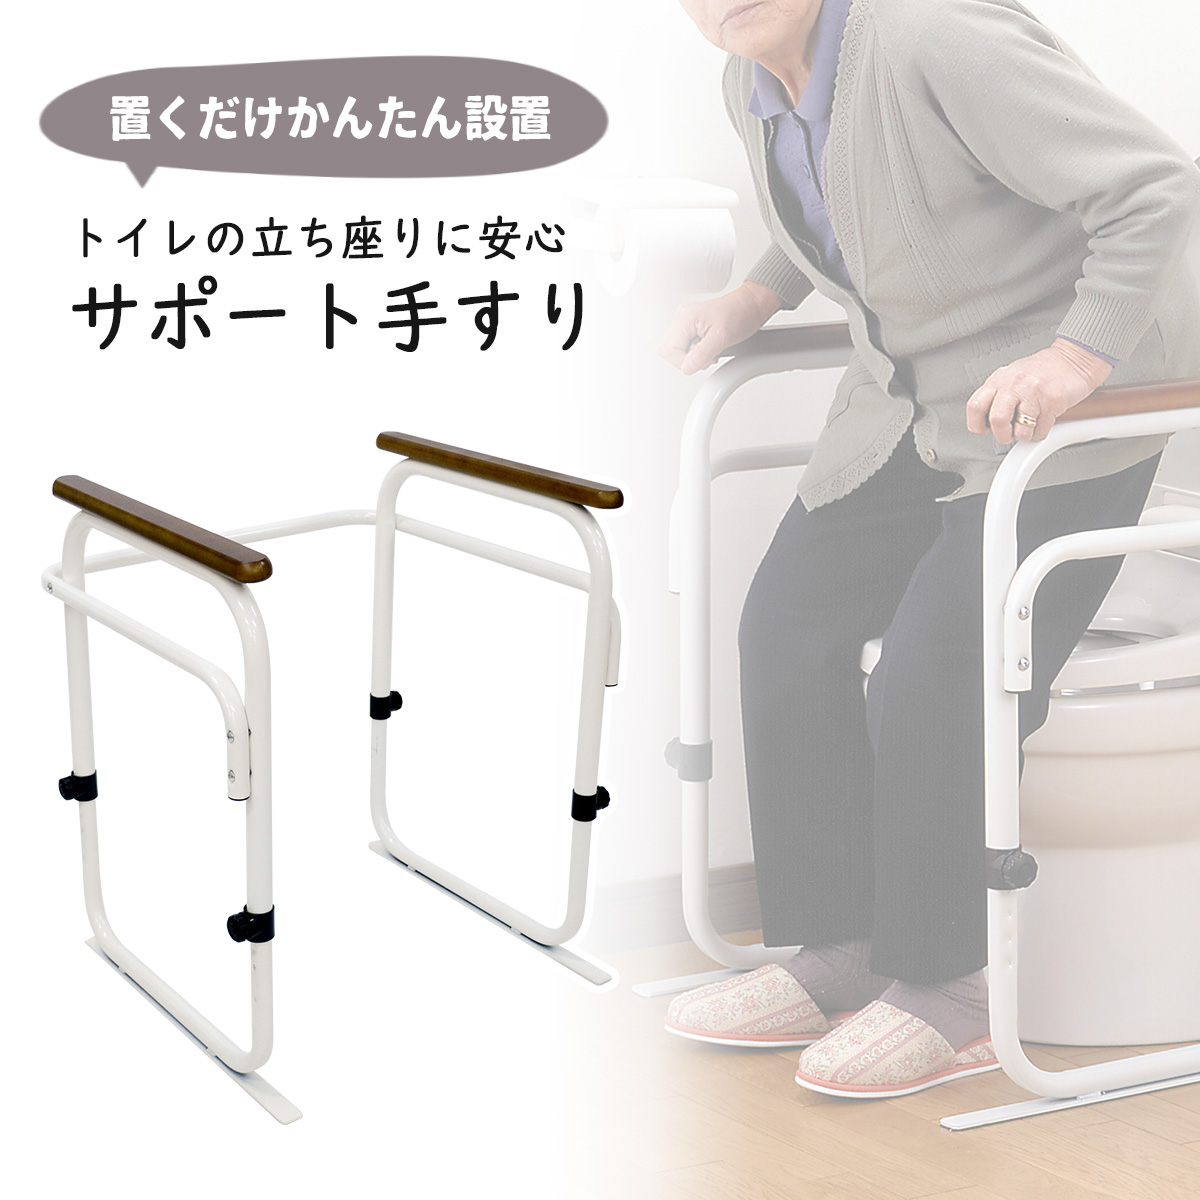 トイレ用 アーム ホワイト<br>日本製 手すり ひじ掛け 椅子<br>トイレ 置くだけ かんたん設置<br>介助 介護 据え置き 安定<br>安心 快適 調節可能